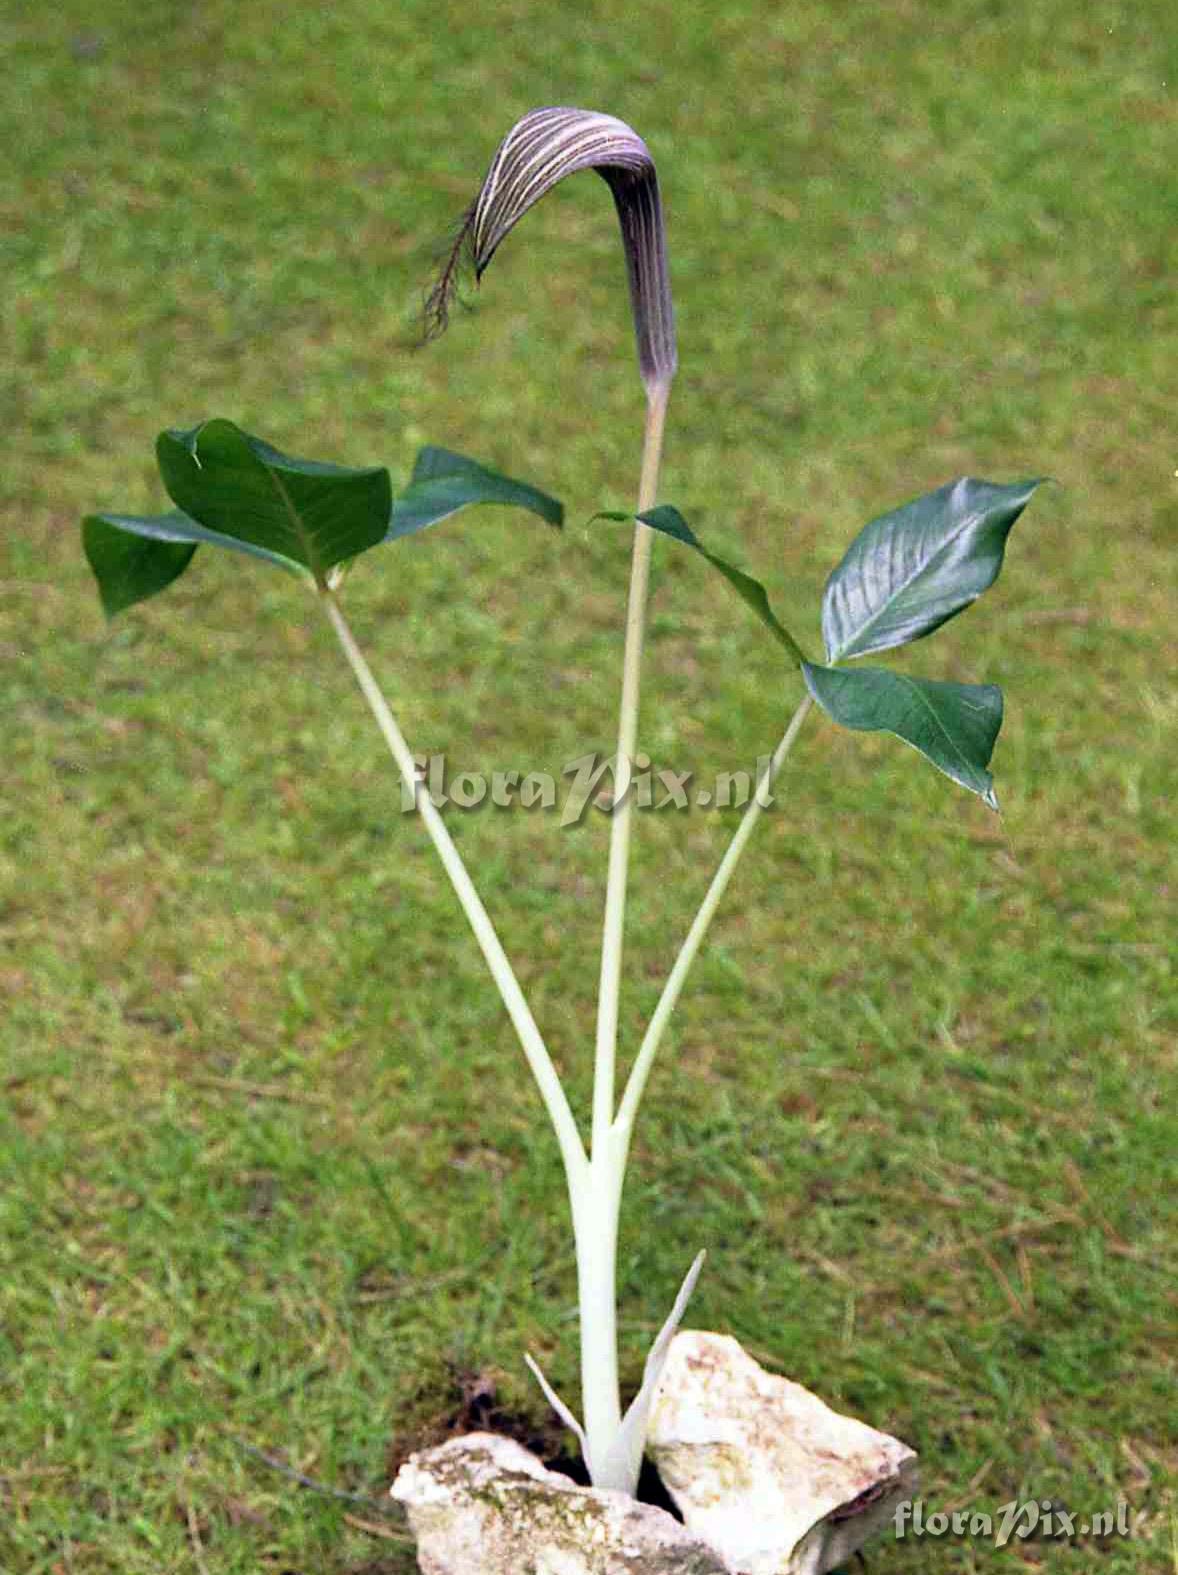 Arisaema fimbriatum subsp. fimbriatum